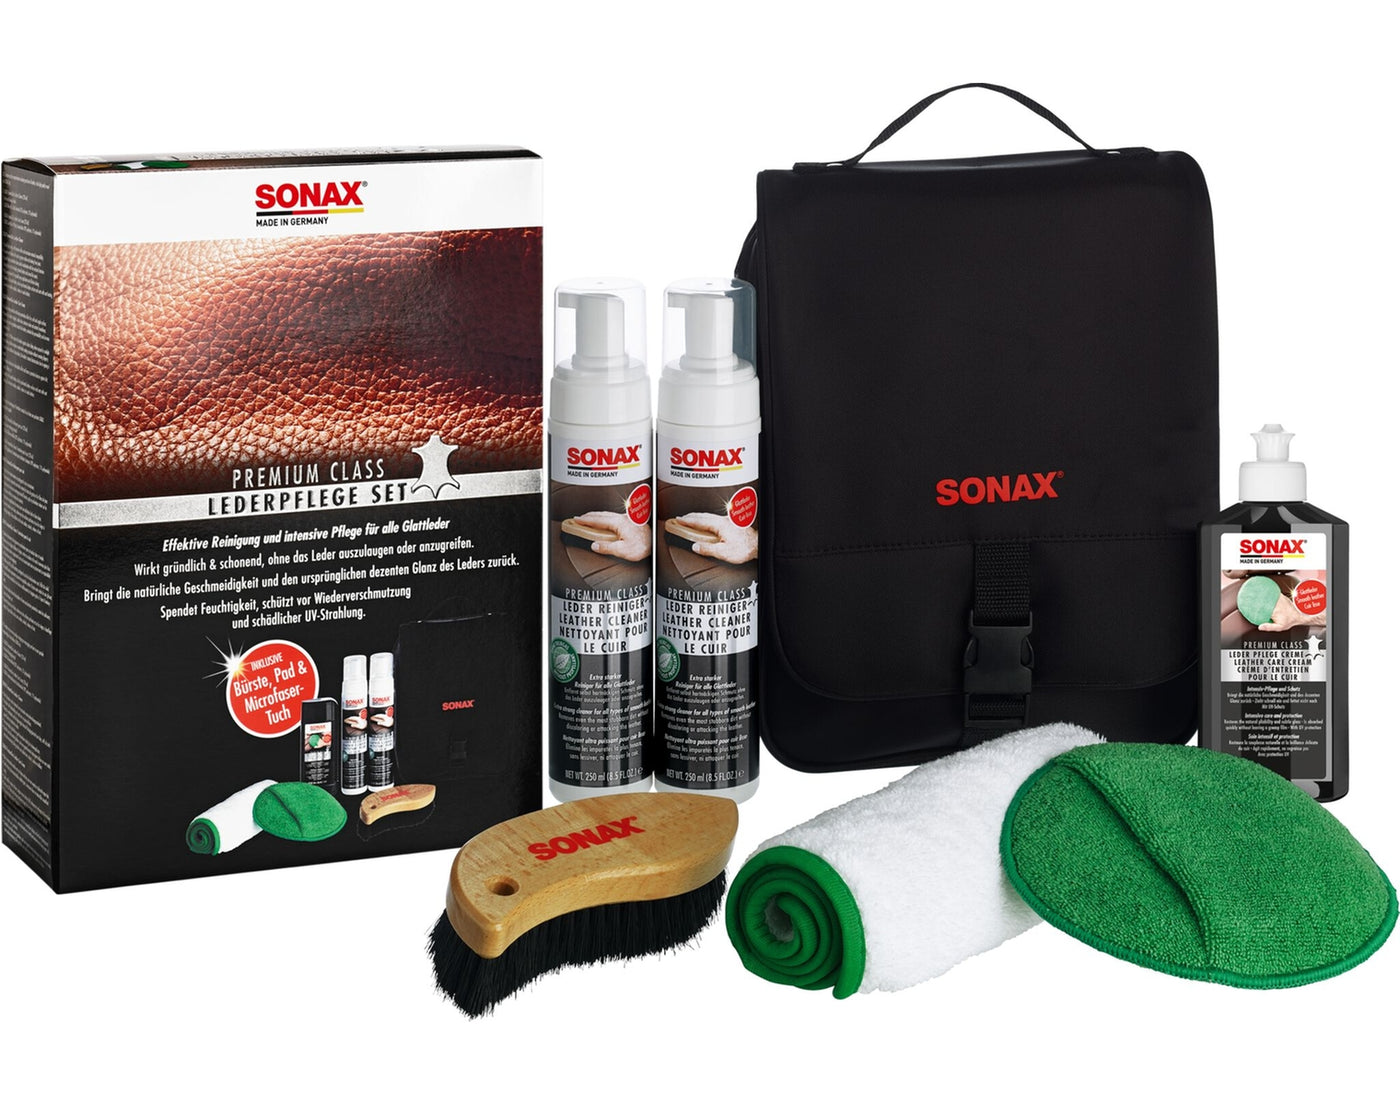 SONAX - Premium Class LederPflegeSet - Garage/Velos-Motos Allemann